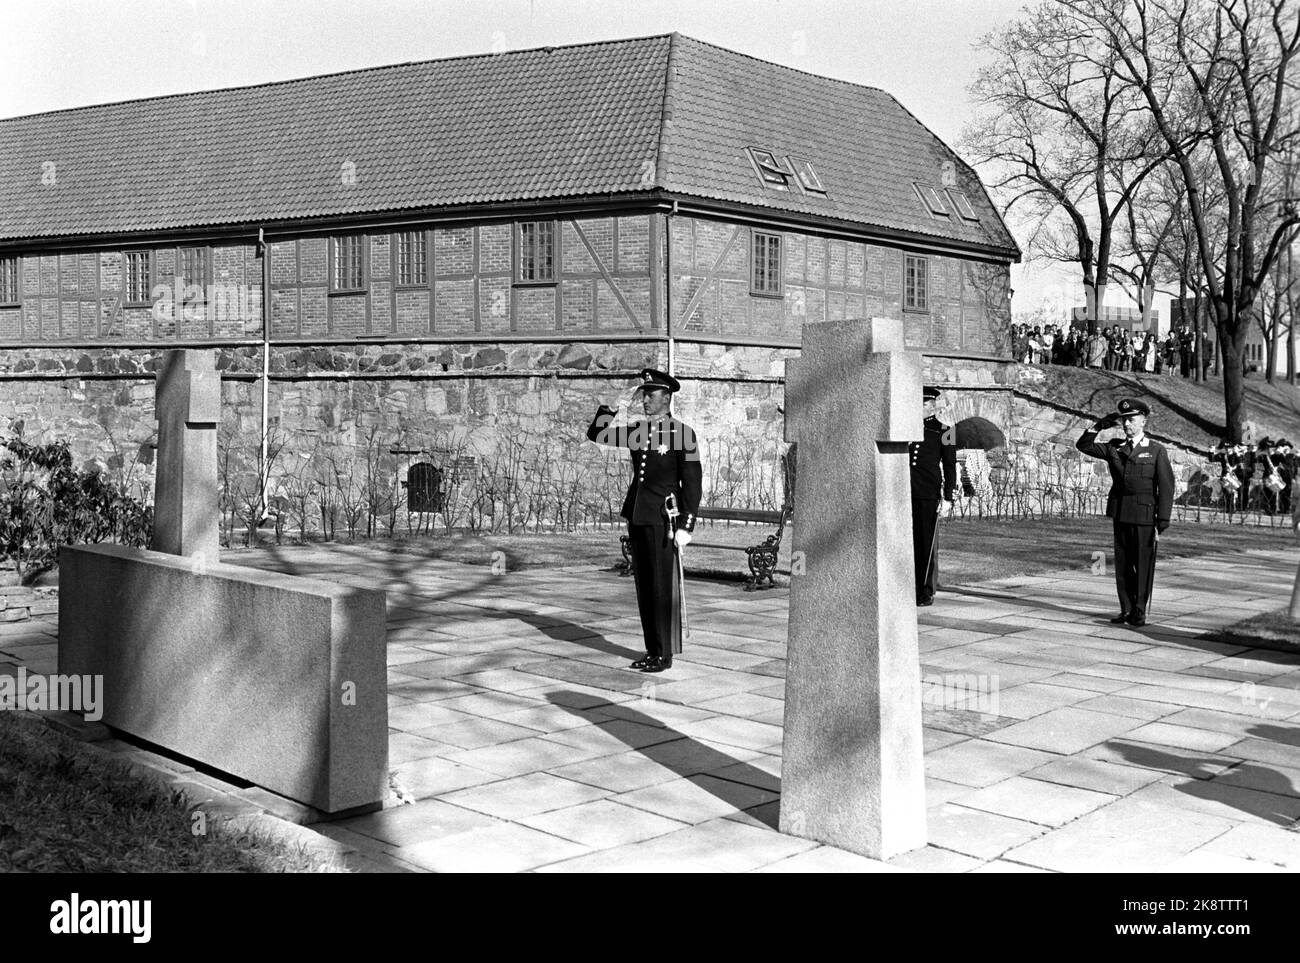 Oslo 19700507 le 25th anniversaire de la libération est marqué lors d'événements dans toute la Norvège. Ici, le prince héritier Harald a rendu hommage à la mise d'une couronne sur le monument commémoratif des patriotes norvégiens tombés au cours de la Seconde Guerre mondiale, à la forteresse d'Akershus. Photo: NTB / NTB Banque D'Images